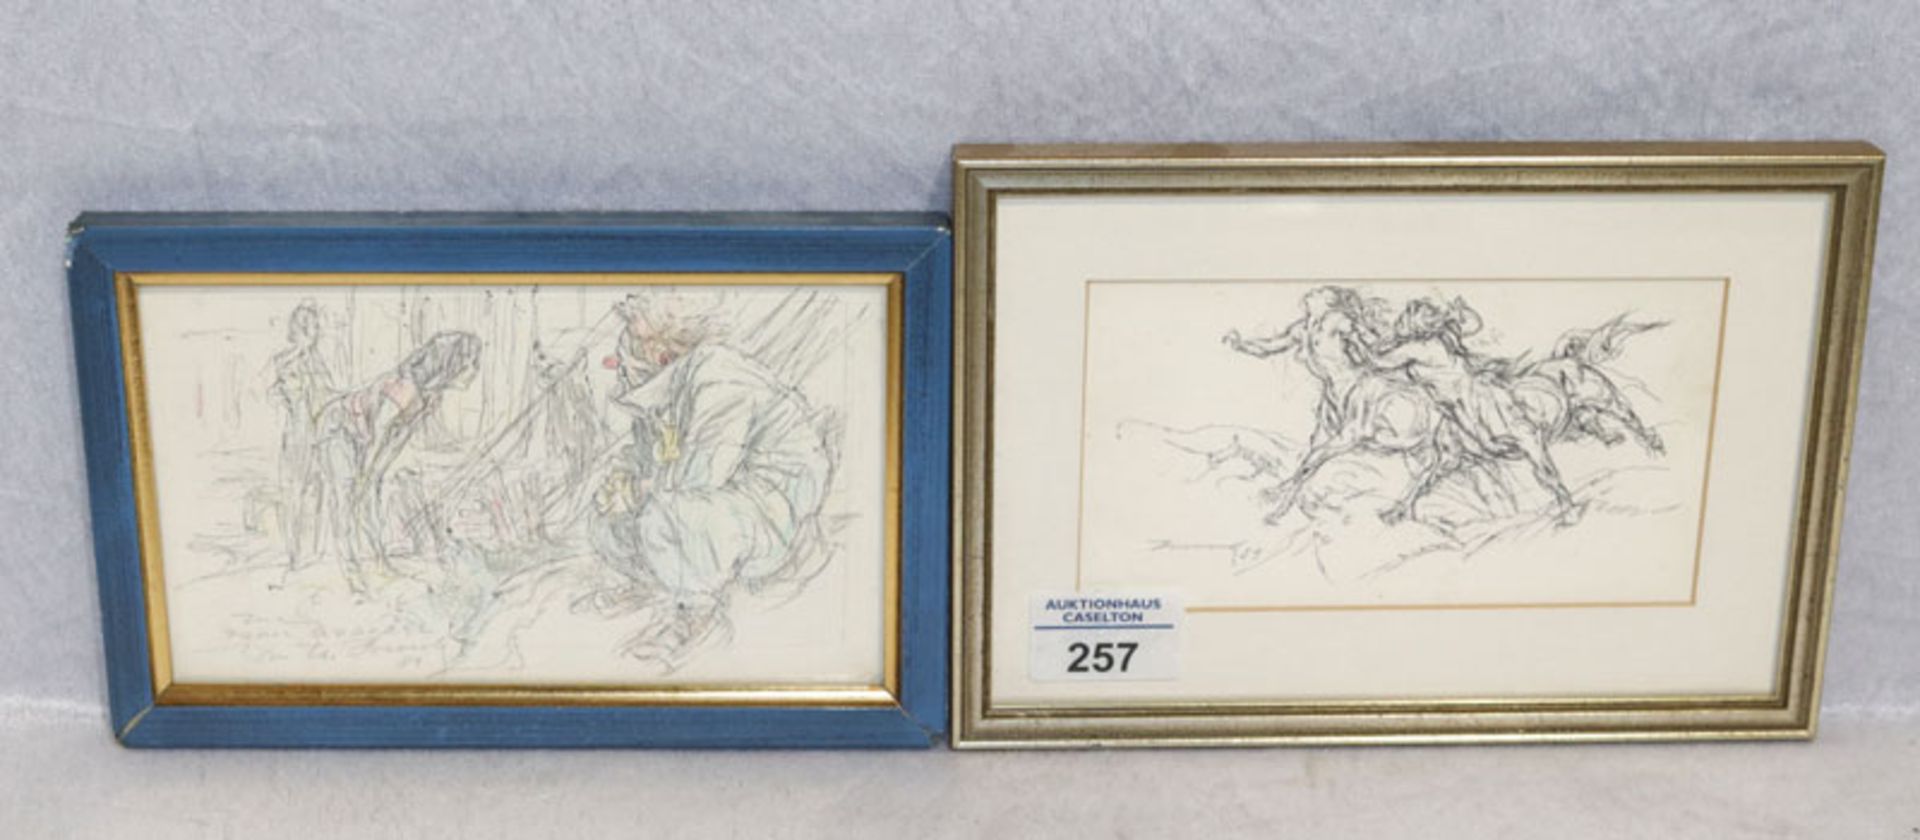 2 Zeichnungen 'Zentauren' undeutlich signiert und datiert 83, mit Passepartout unter Glas gerahmt,